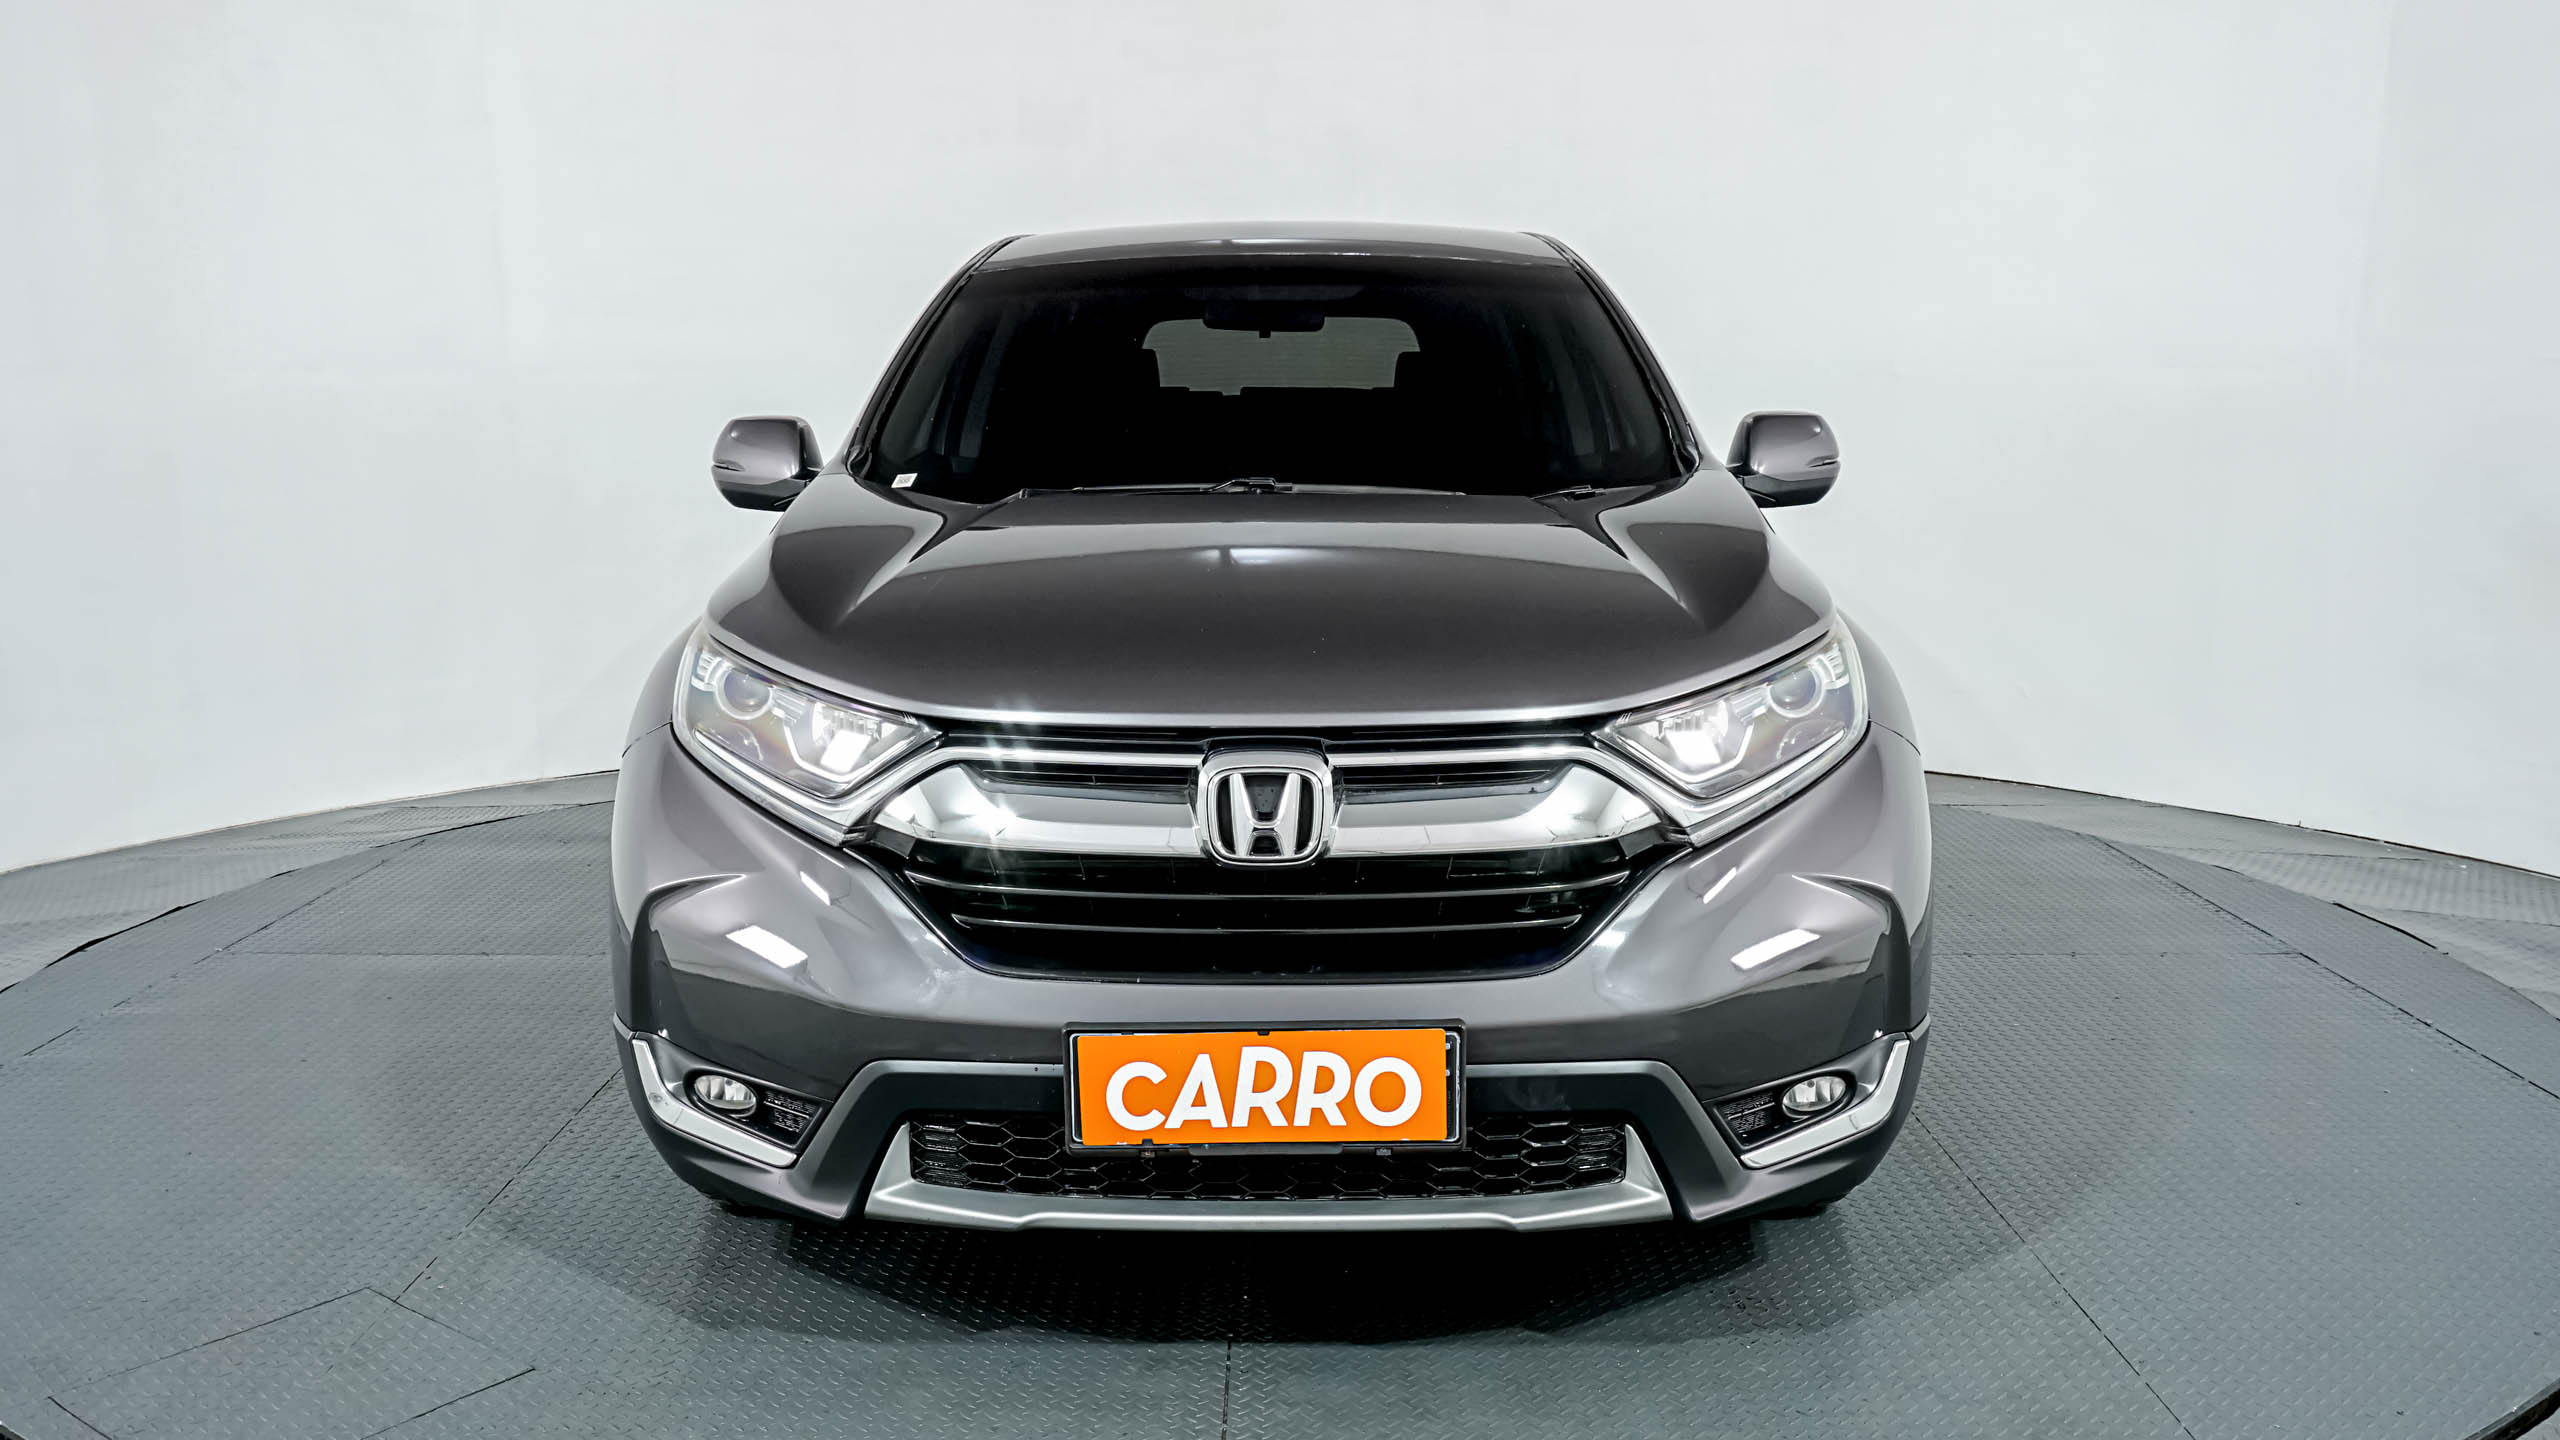 2017 Honda CRV 1.5L Turbo 1.5L Turbo bekas